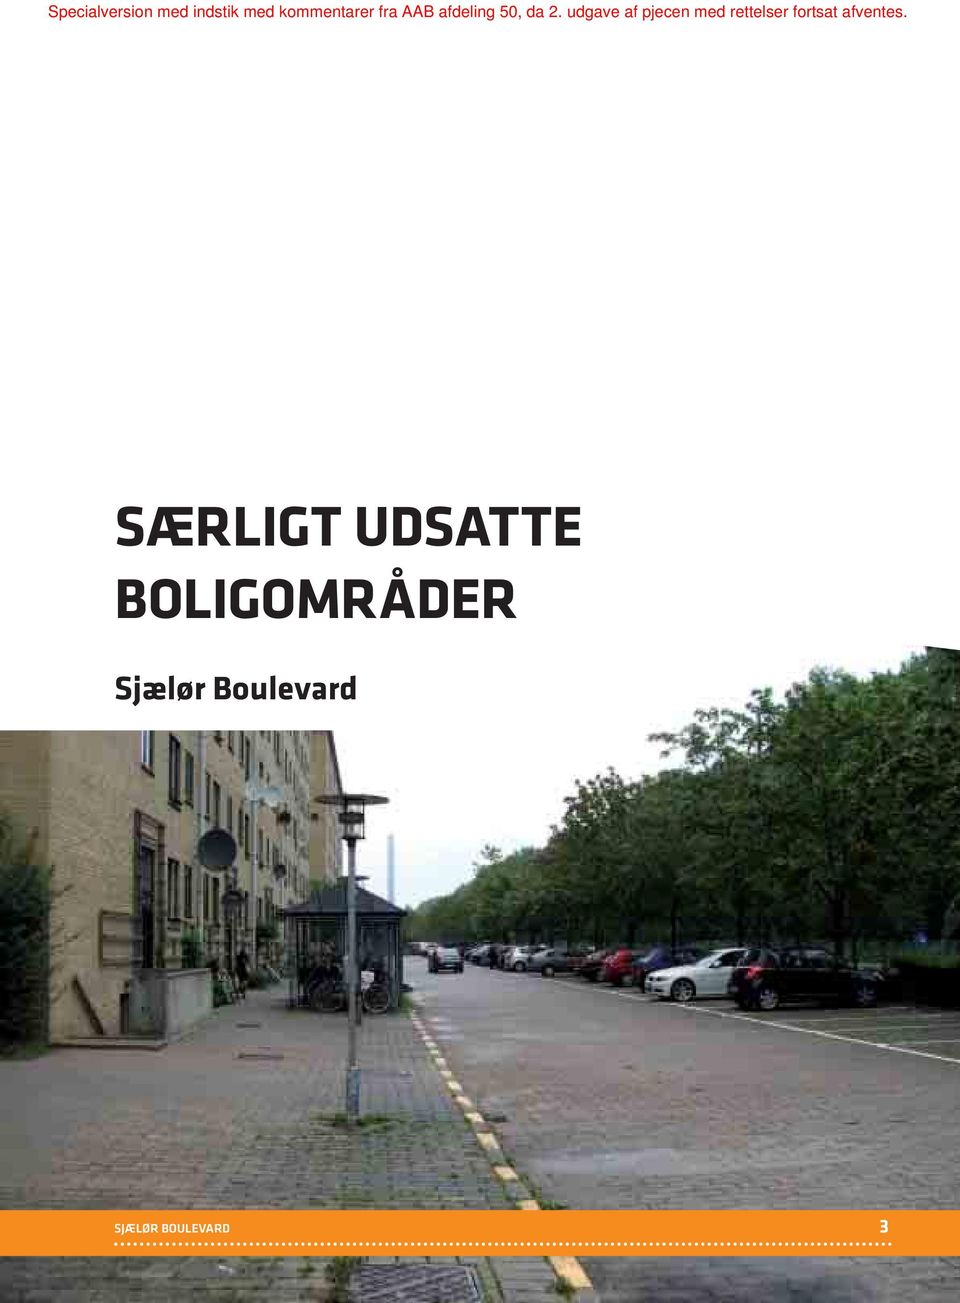 Boulevard SJÆLØR